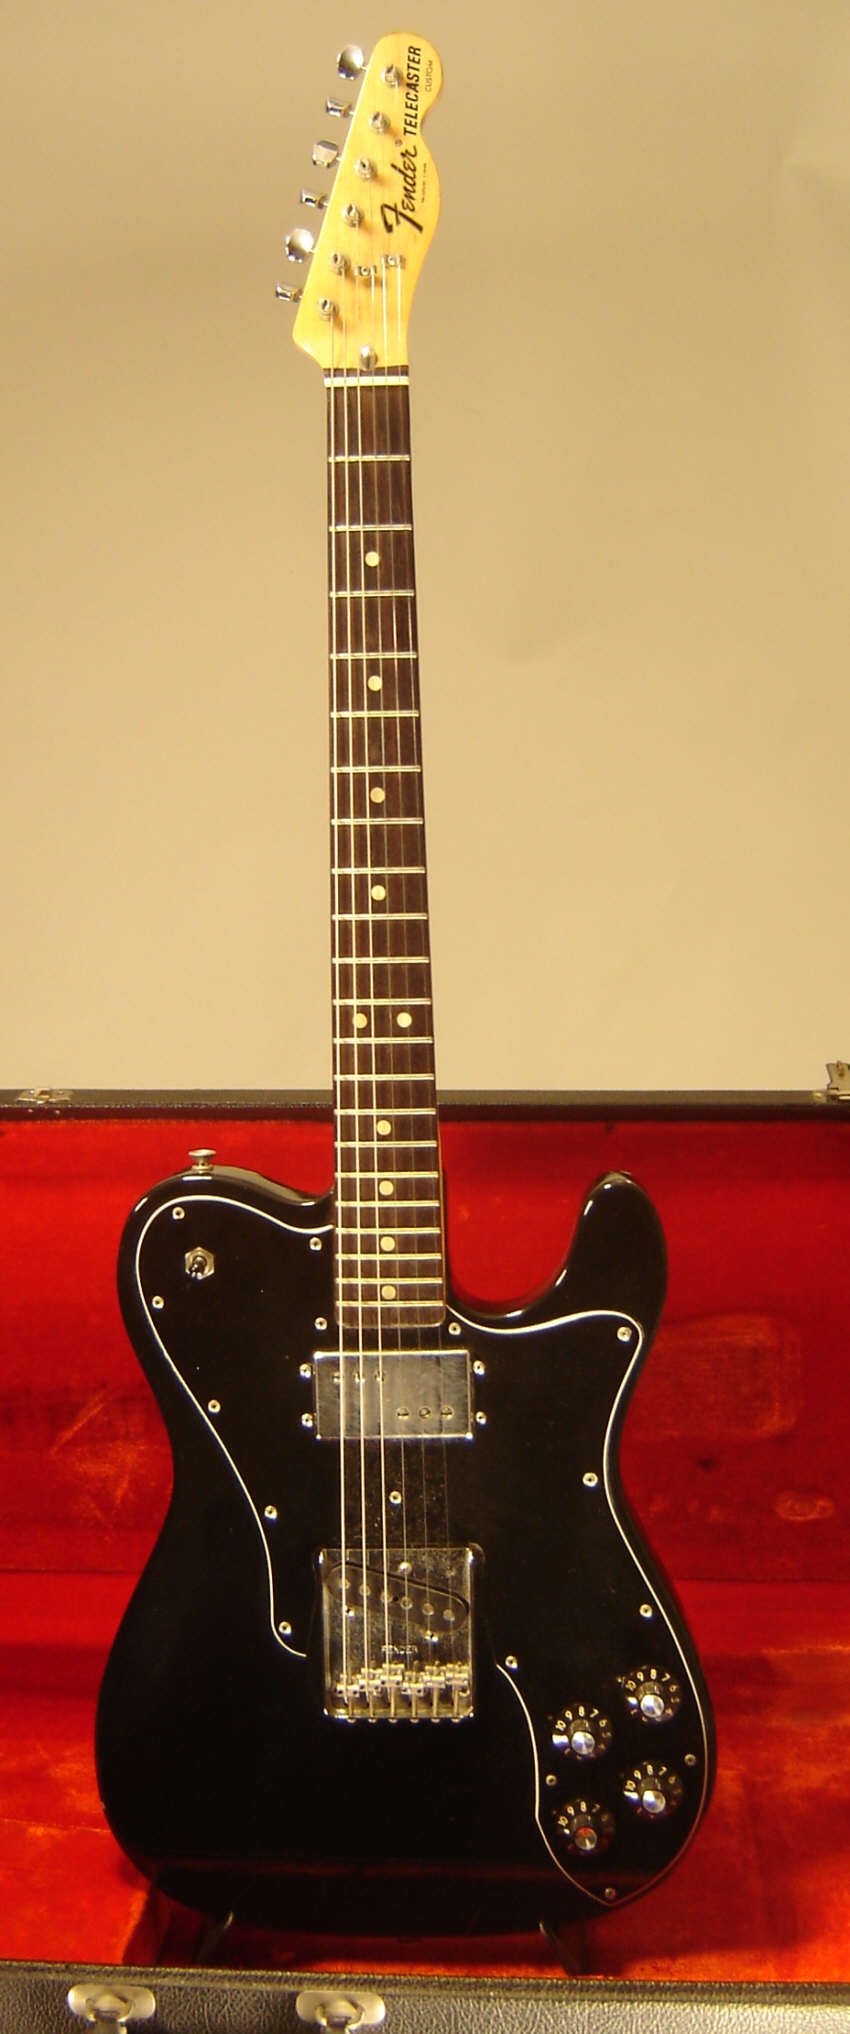 Fender_Telecaster_Custom_1974_Black.jpg